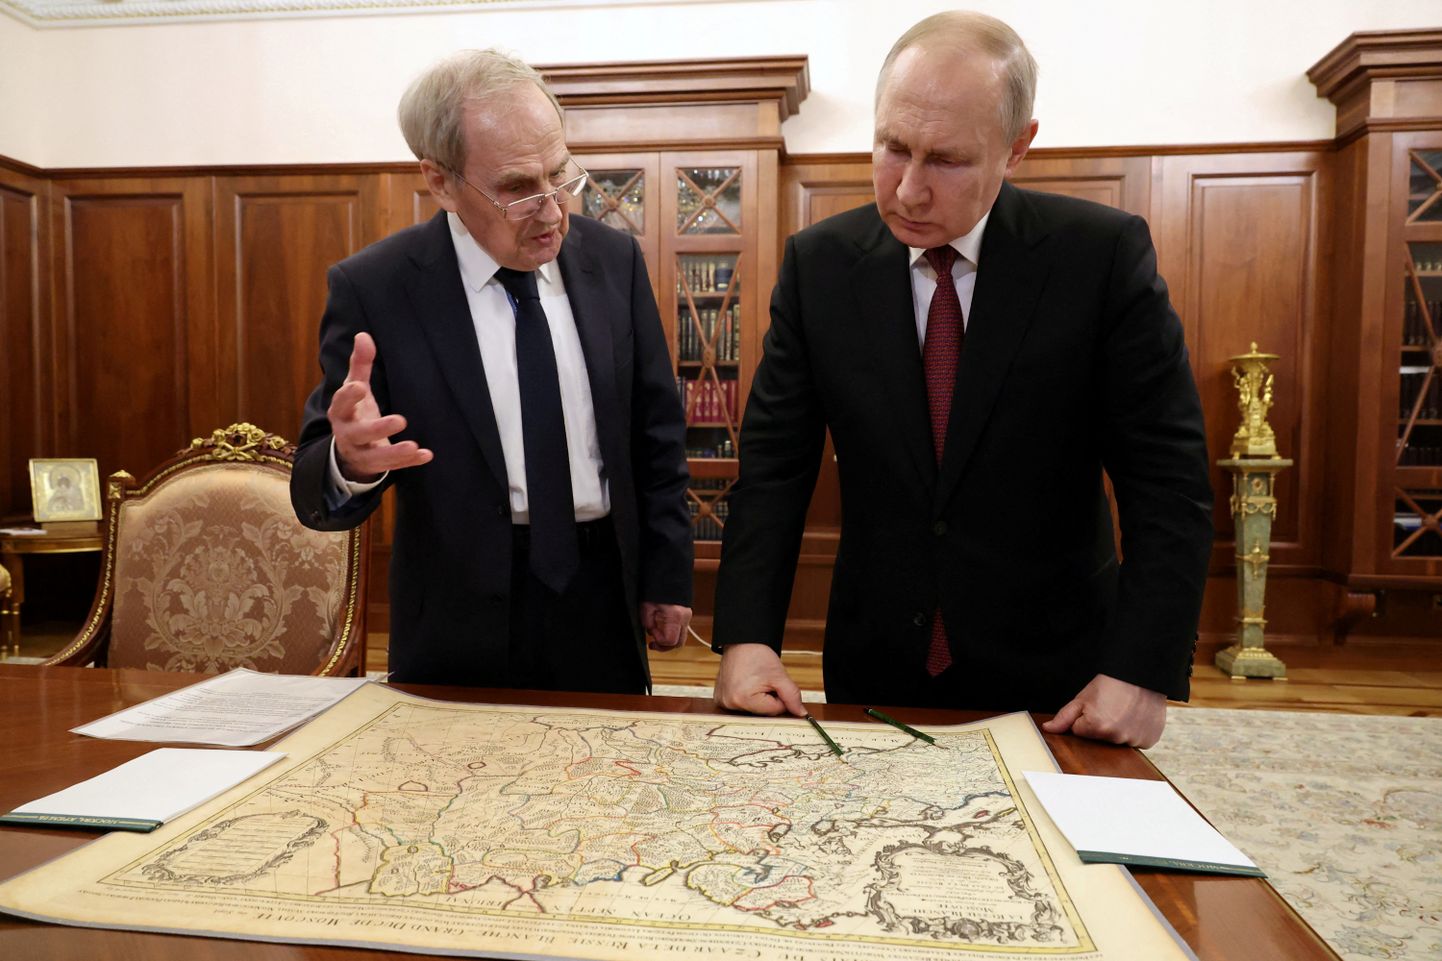 Venemaa president Vladimir Putin (paremal) ja Vene konstitutsioonikohtu esimees Valeri Zorkin vaatamas 23. mail Kremlis 17. sajandi Prantsuse kaarti. Zorkini ja Putini väitel ei ole Ukrainat kunagi olemas olnud